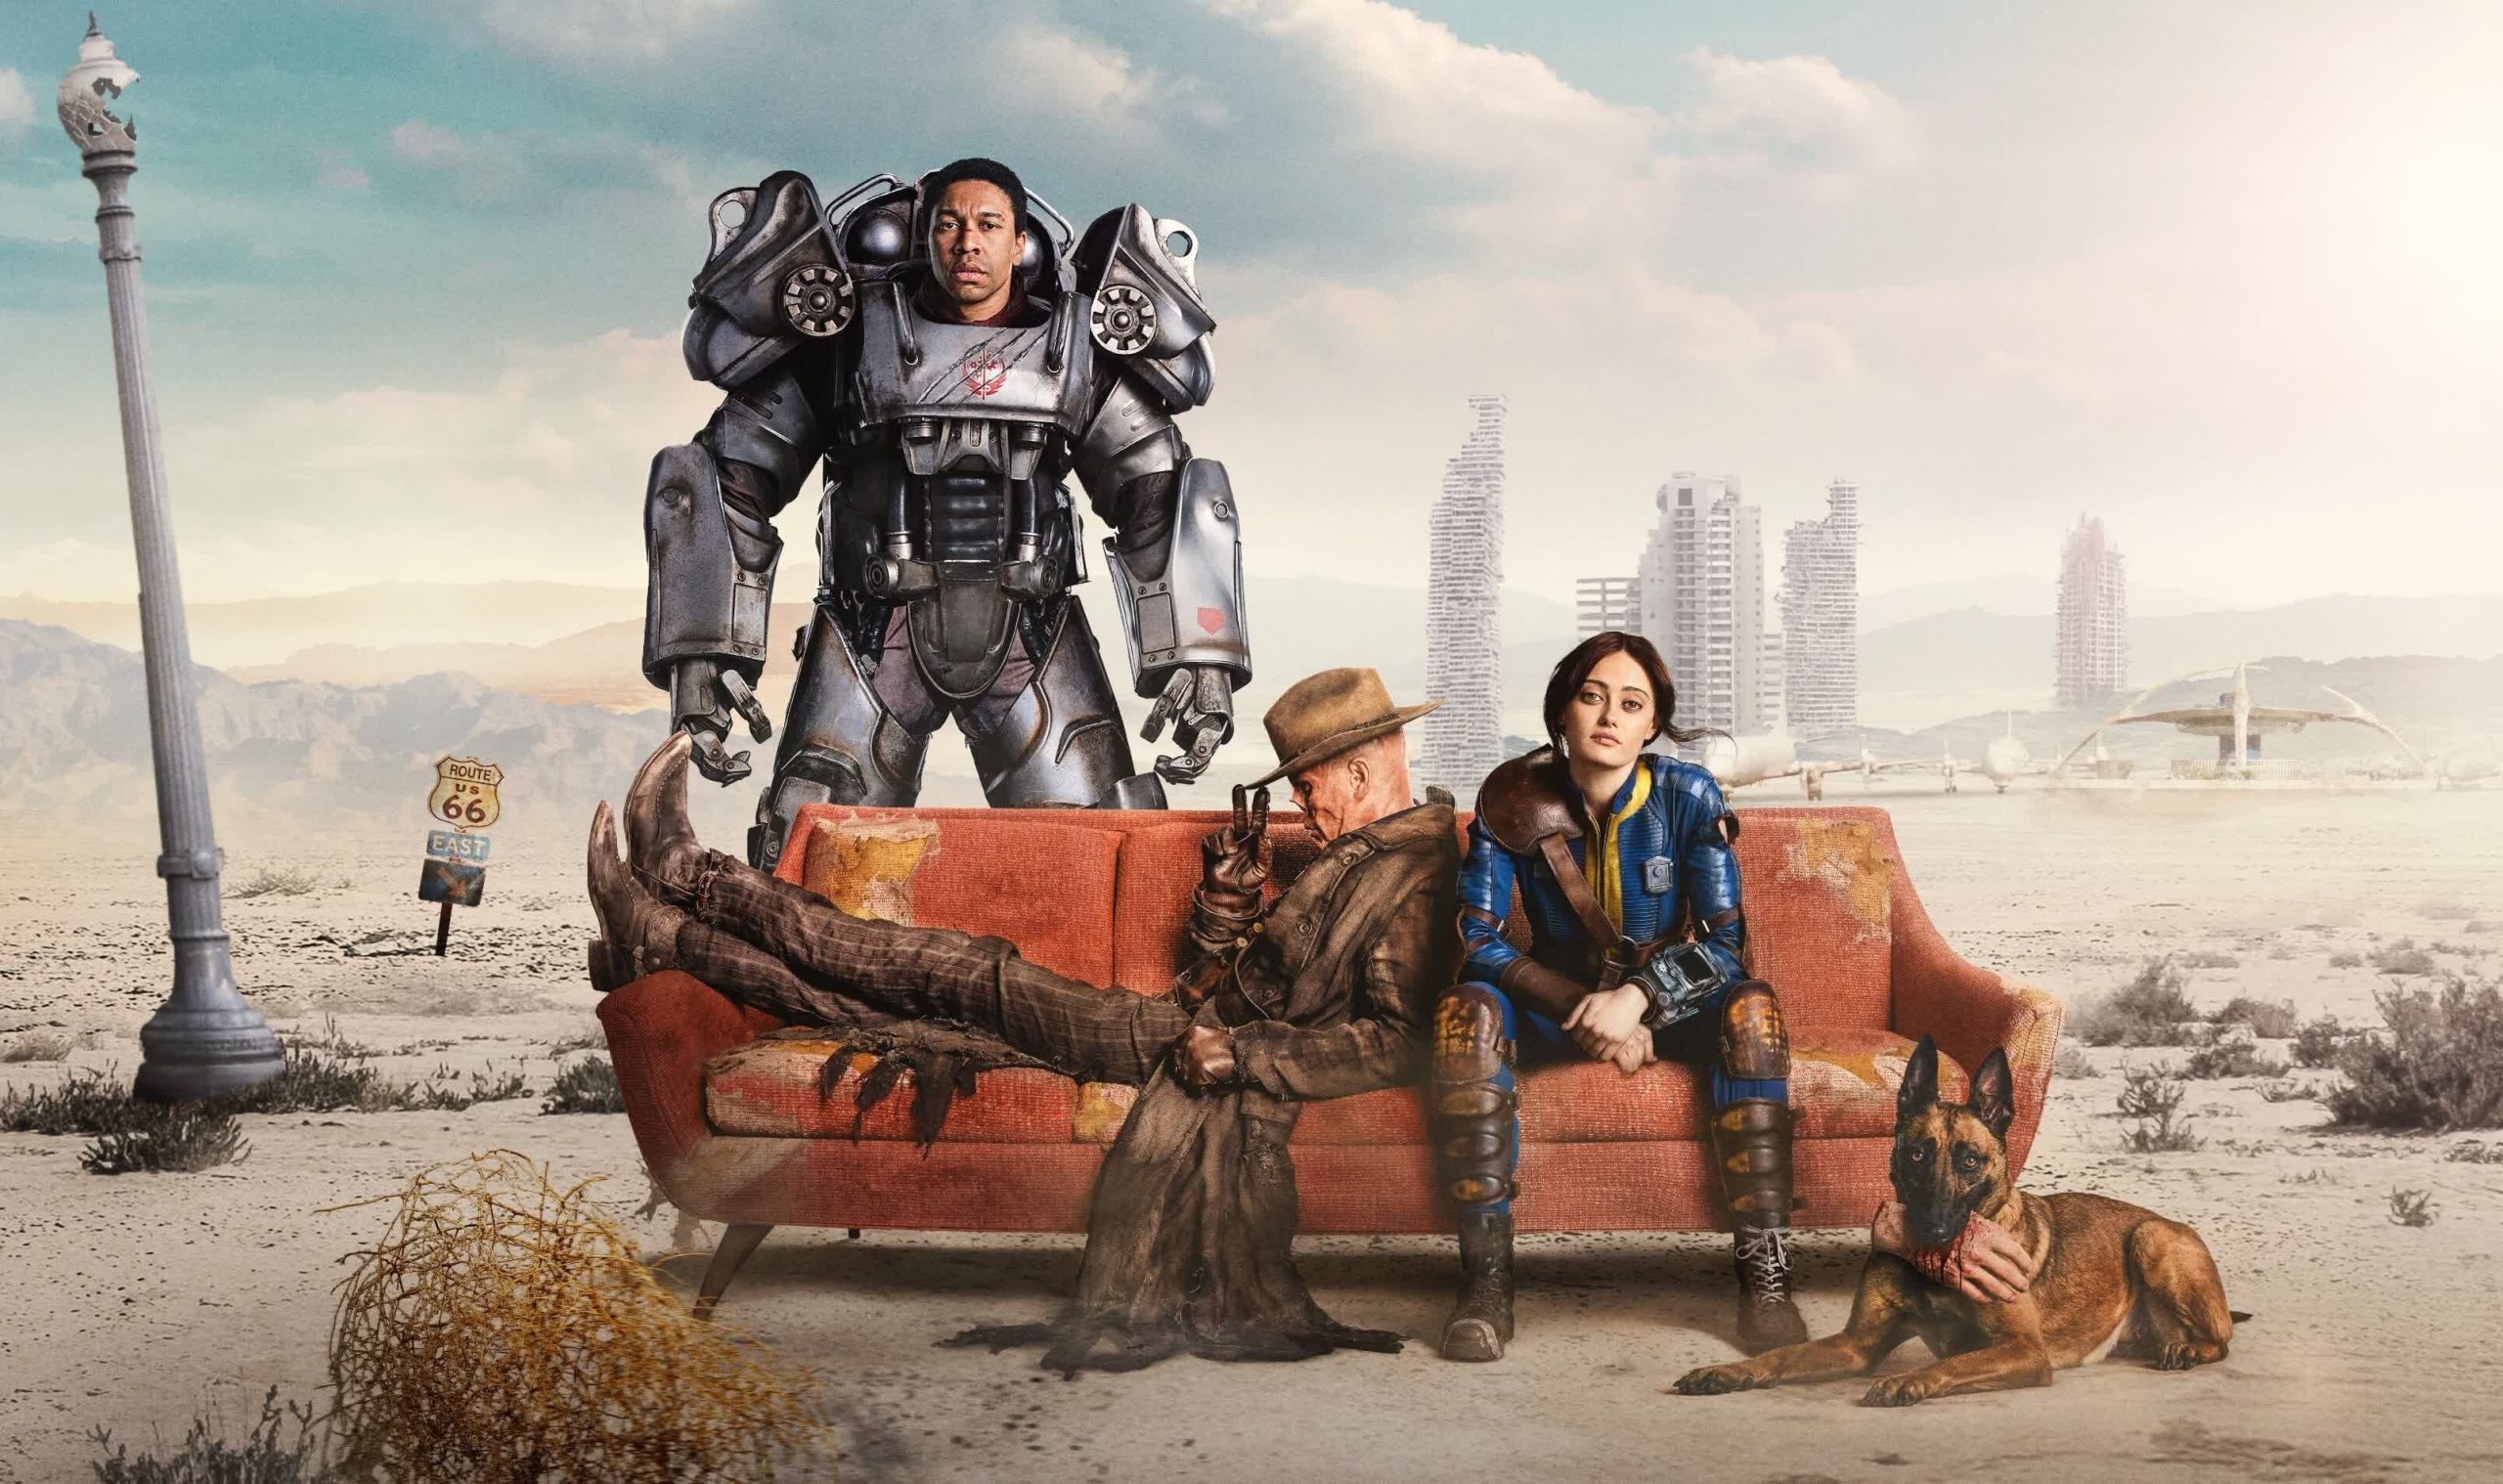 El programa de televisión Fallout asegura su segunda temporada después de su debut estelar